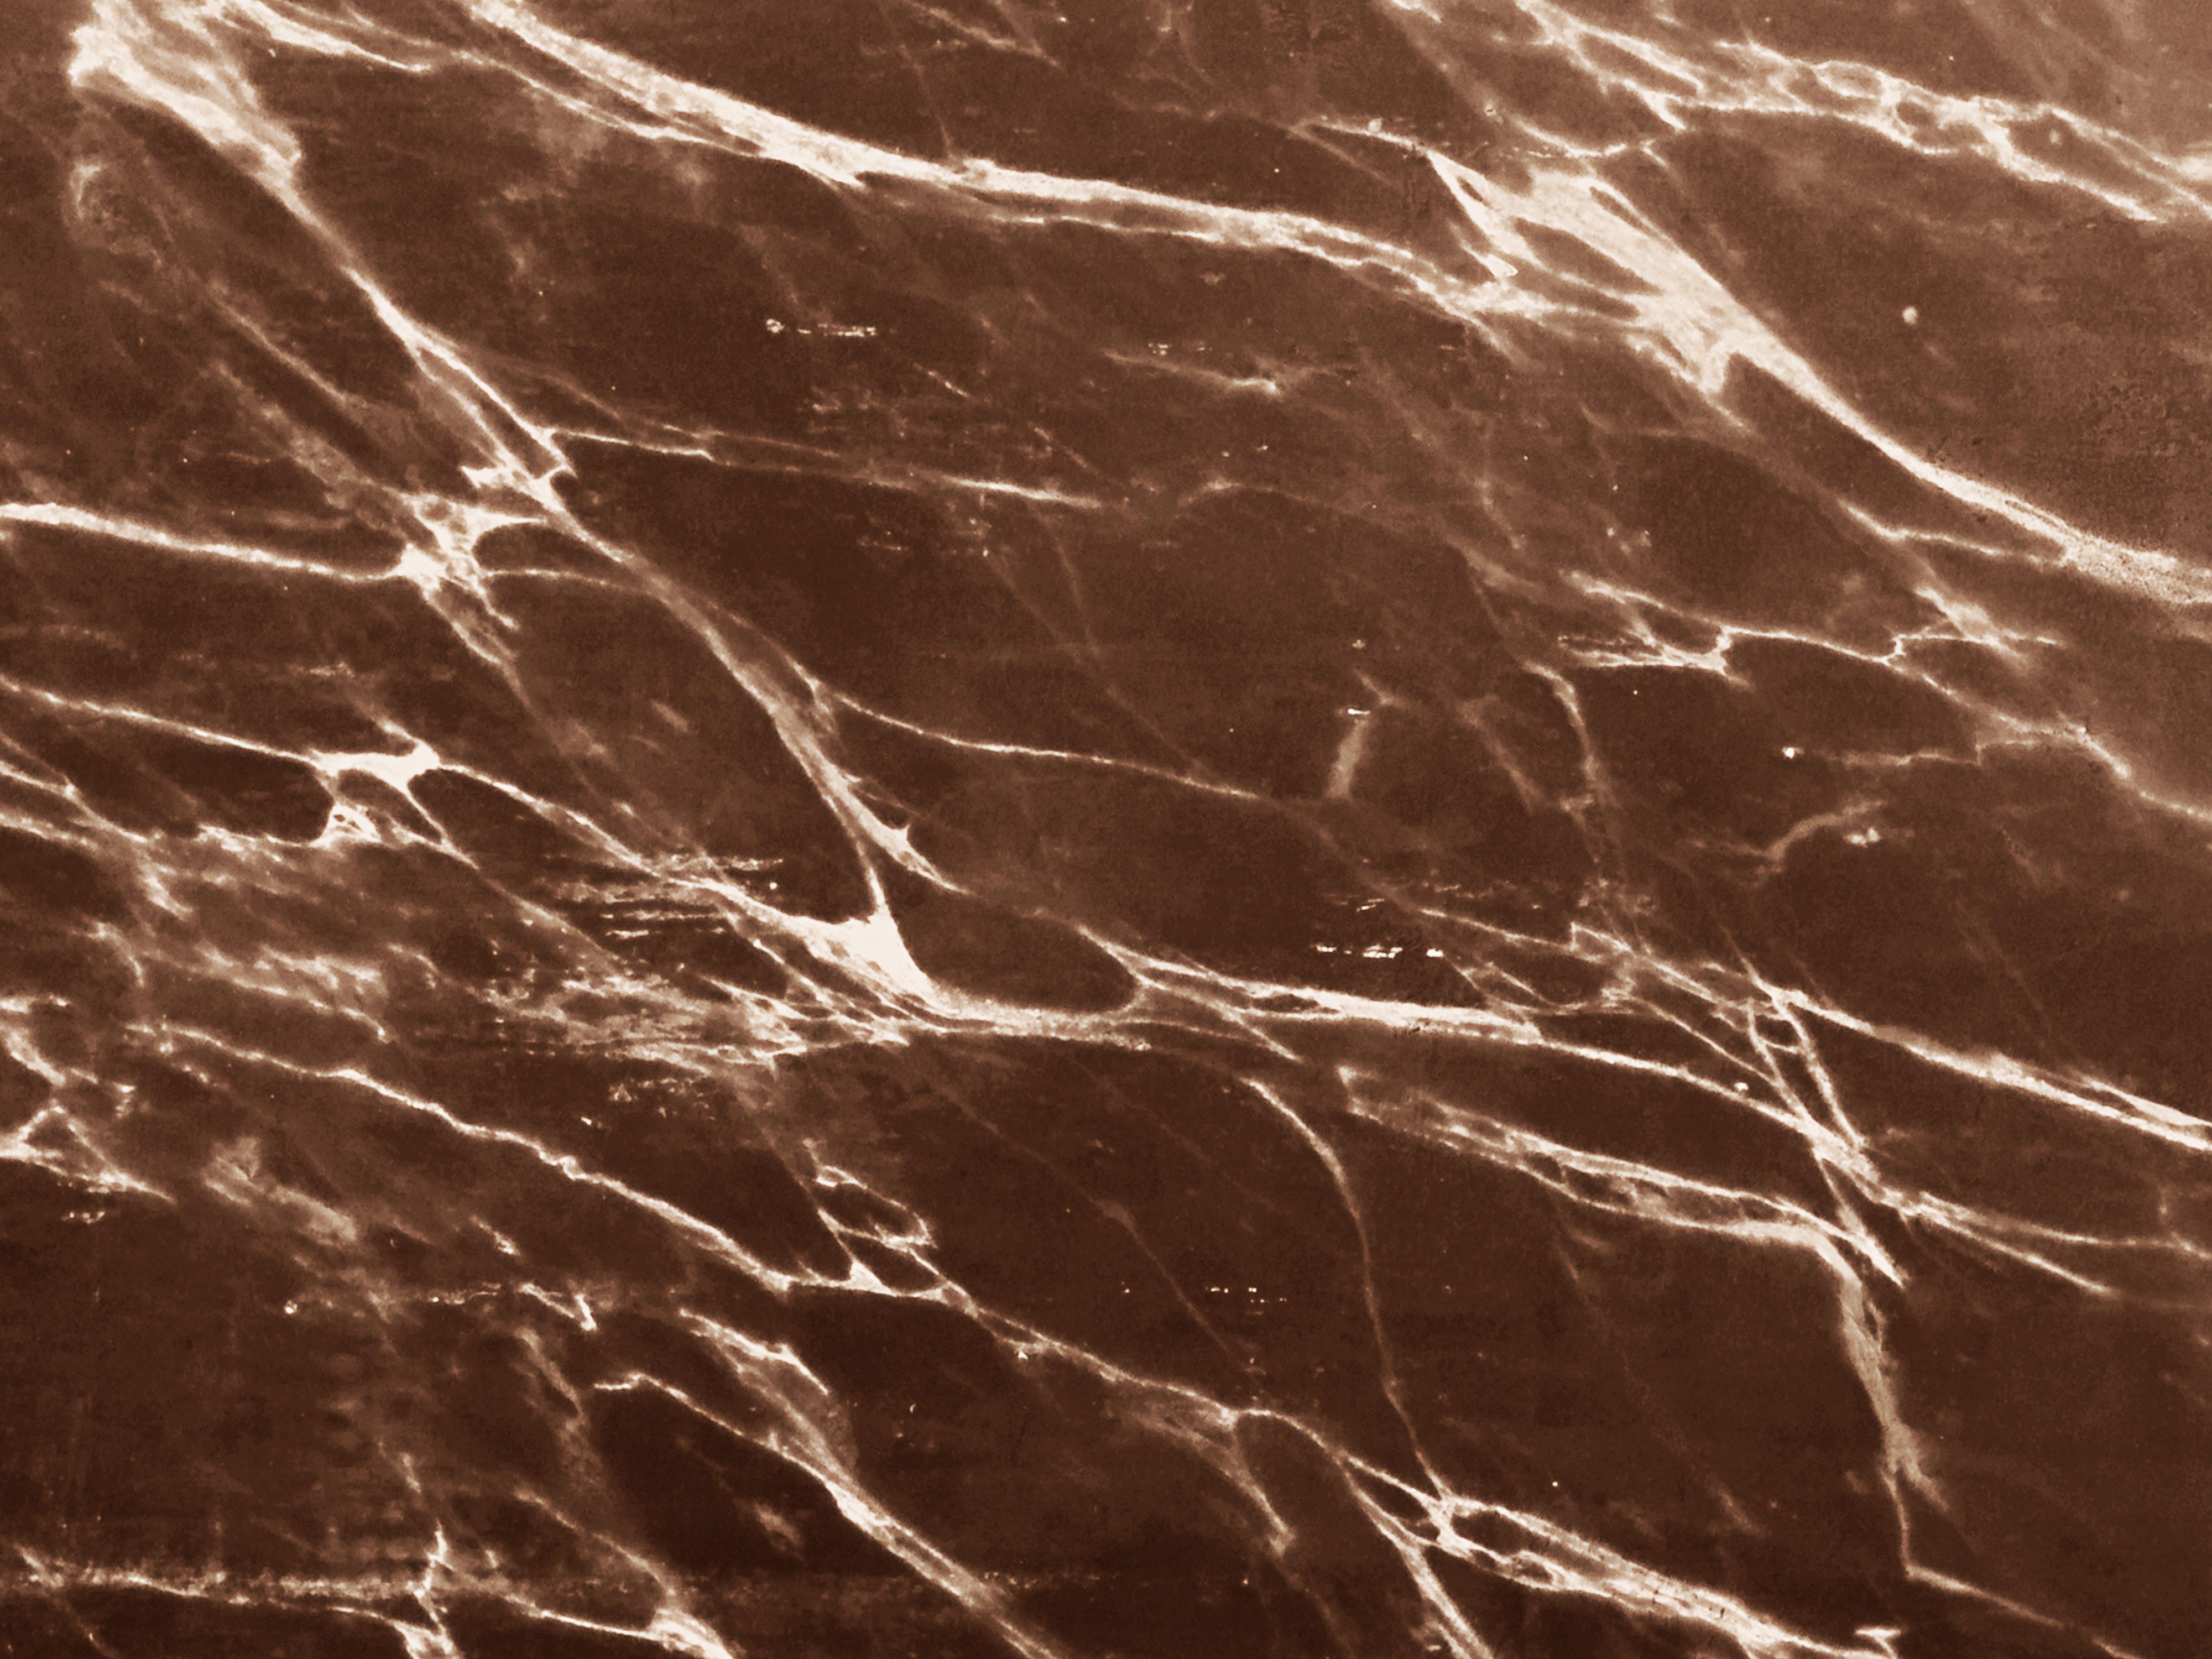  Braune Hintergrundbild 4000x3000. Marmor Stein Texturen und lizenzfrei in Photohop erstellt